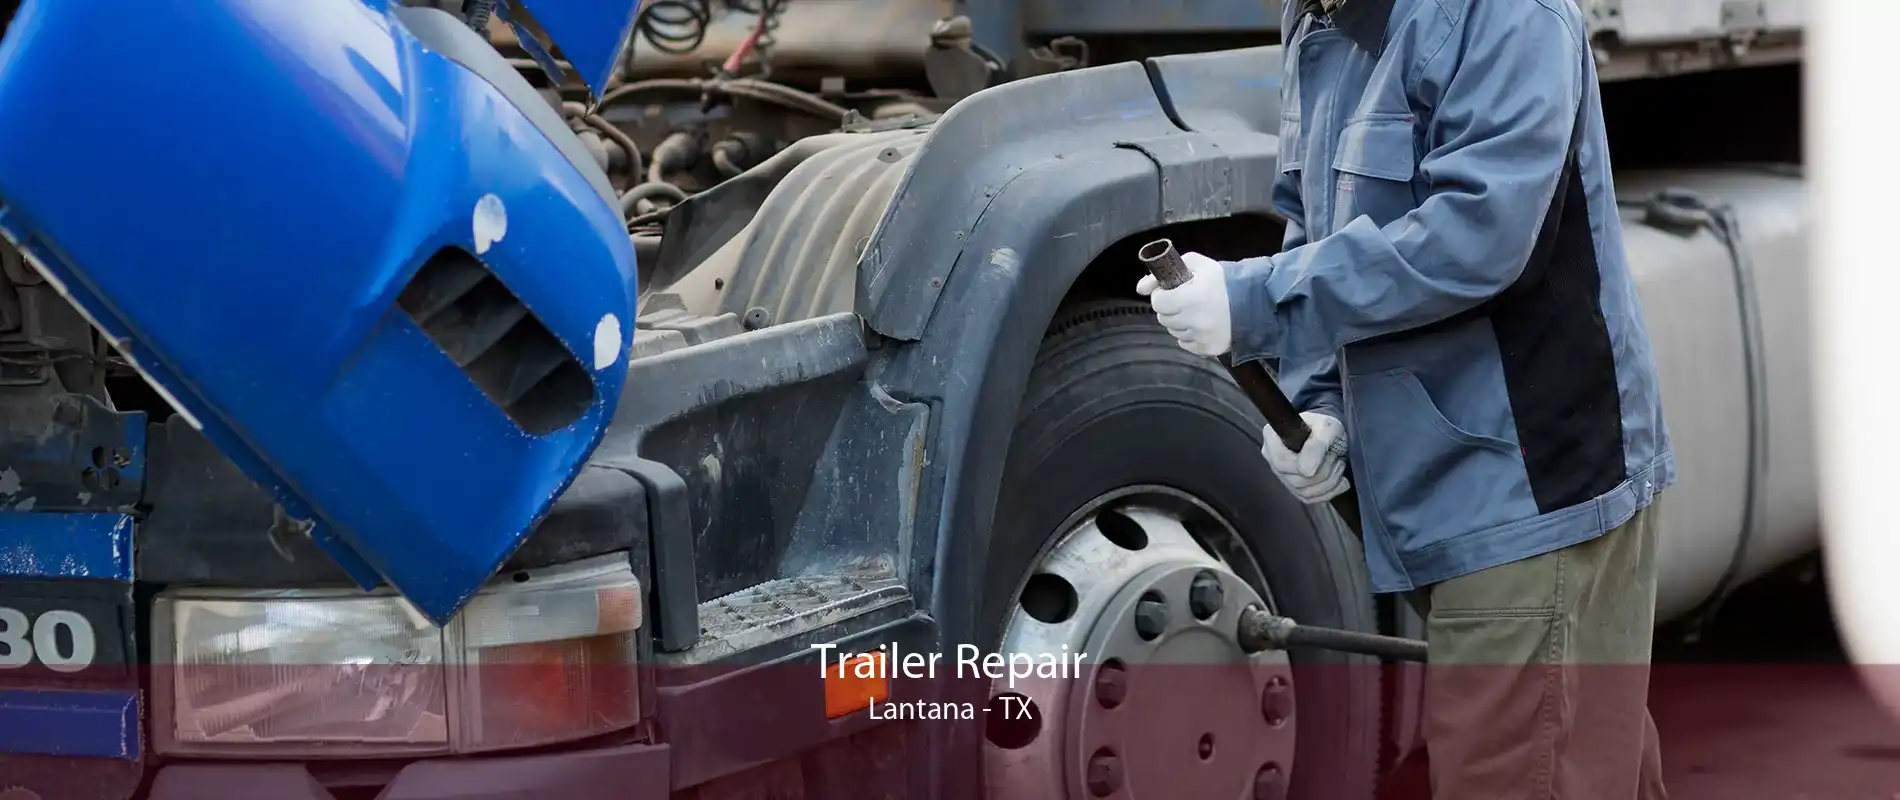 Trailer Repair Lantana - TX